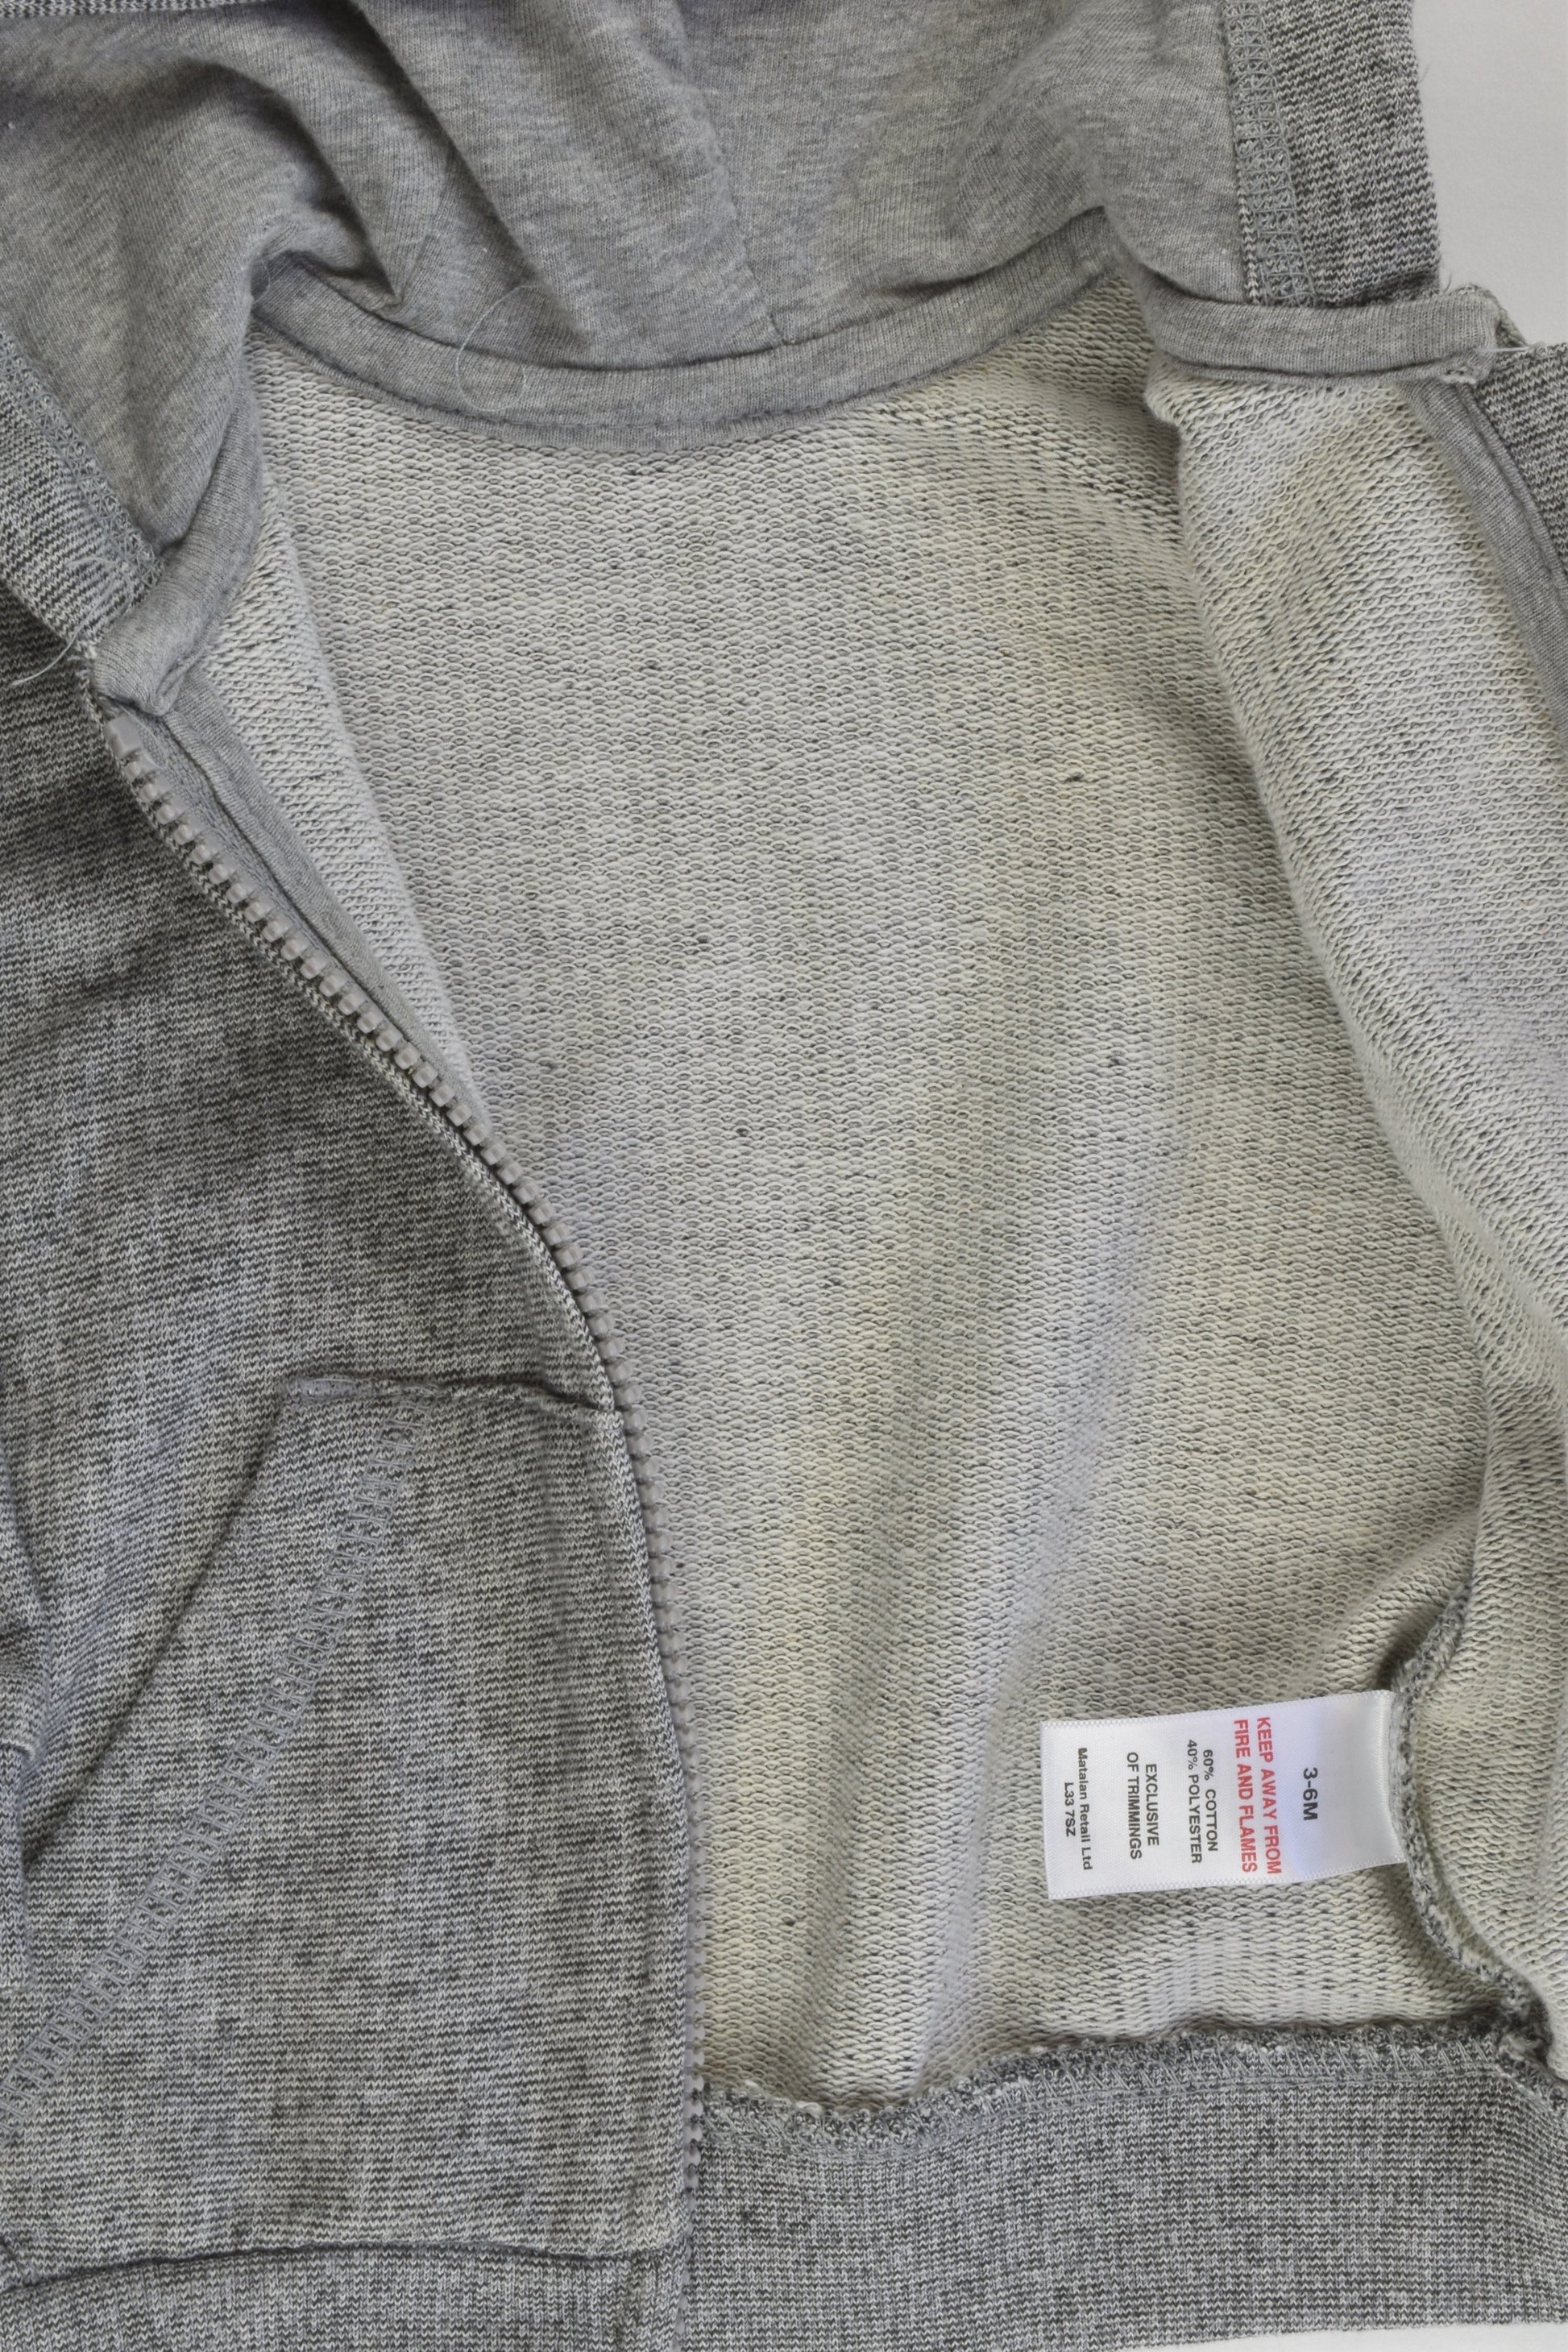 Matalan Size 00 (3-6 months) Grey Hooded Jumper